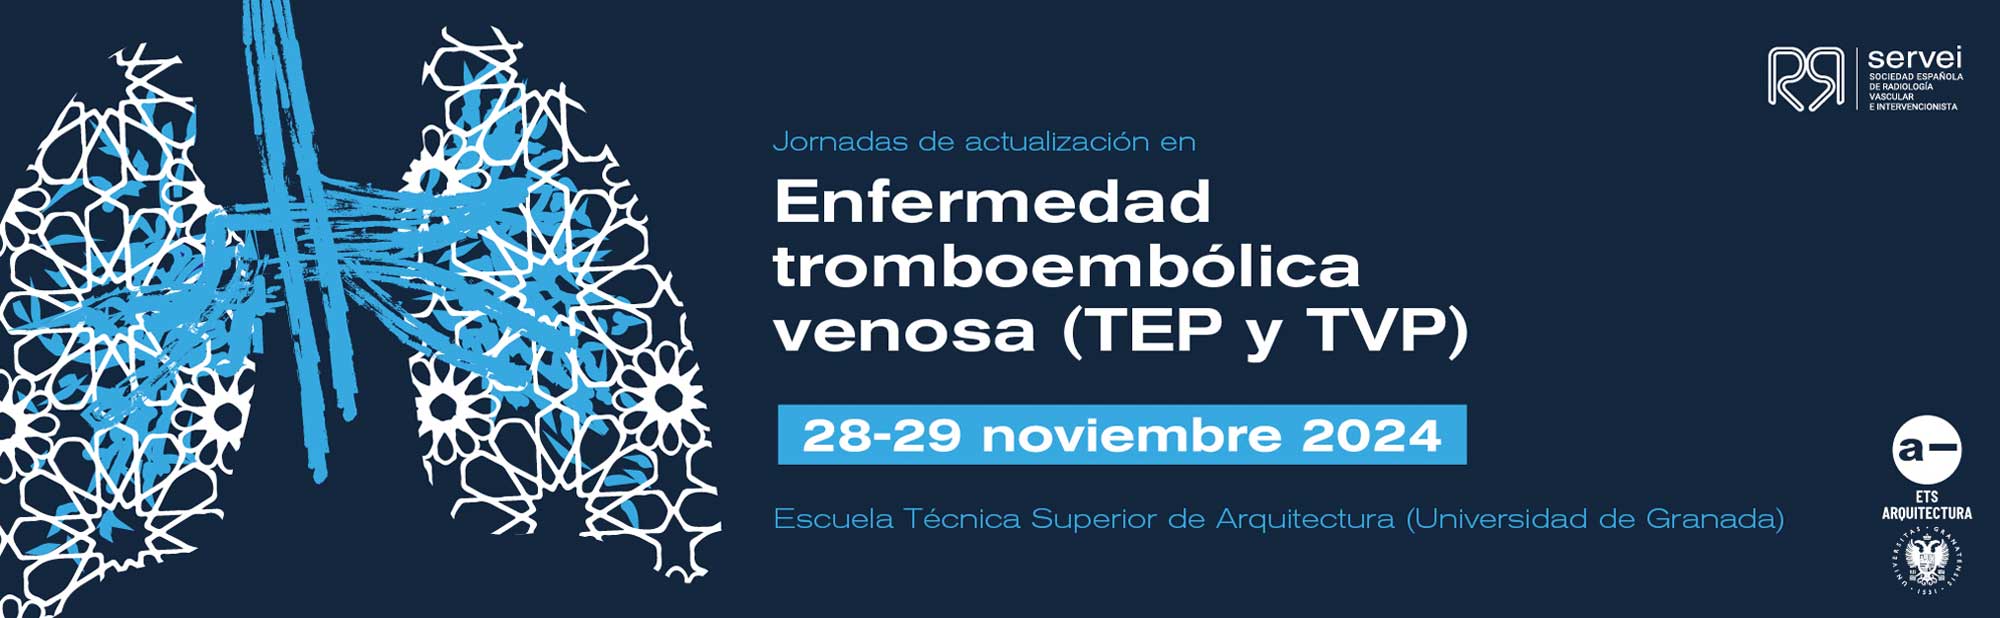 Jornadas Actualización Enfermedad Tromboembólica Venosa (TEP y TVP)